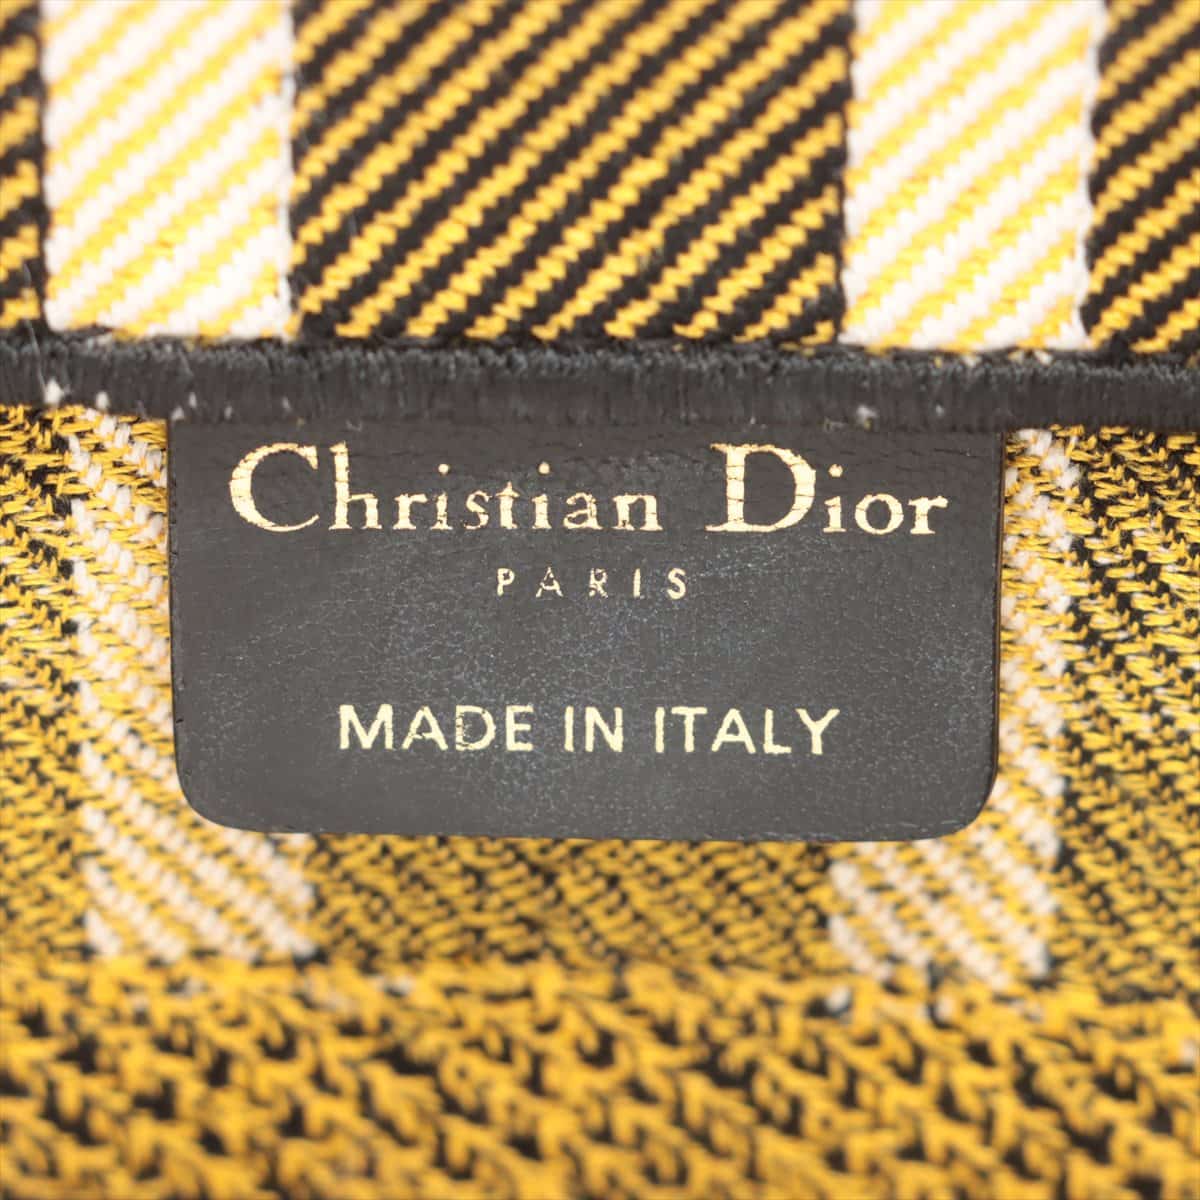 Christian Dior クリスチャンディオール バニティバッグ 金具 黄色